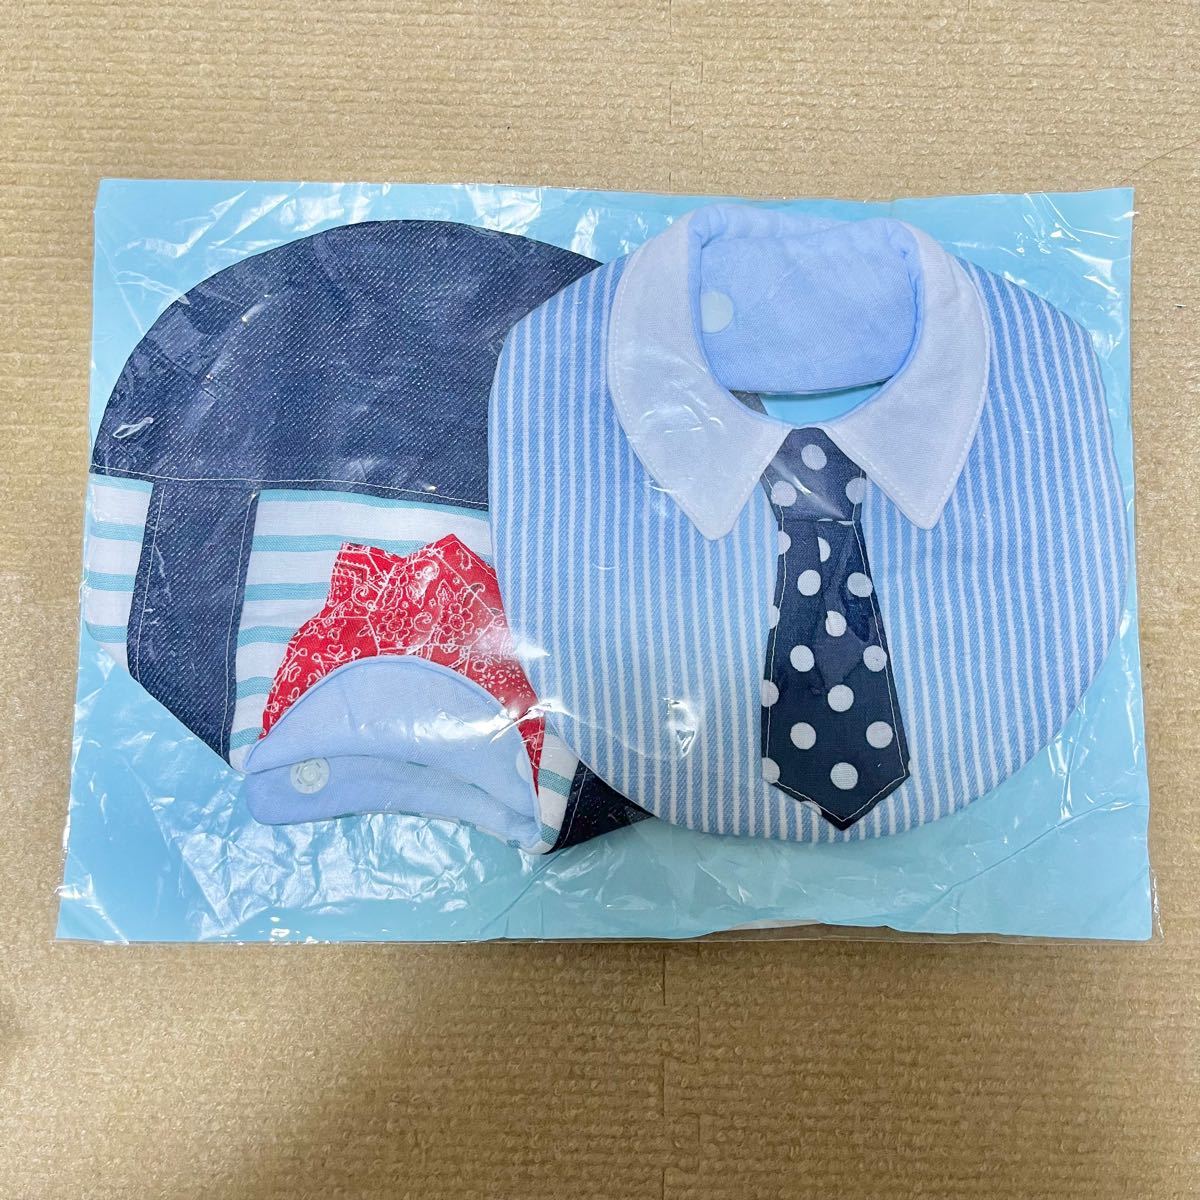 【新品未使用】スタイ 赤ちゃん 2枚セット おしゃれ ネクタイ ブルー スカーフ ハンドメイド